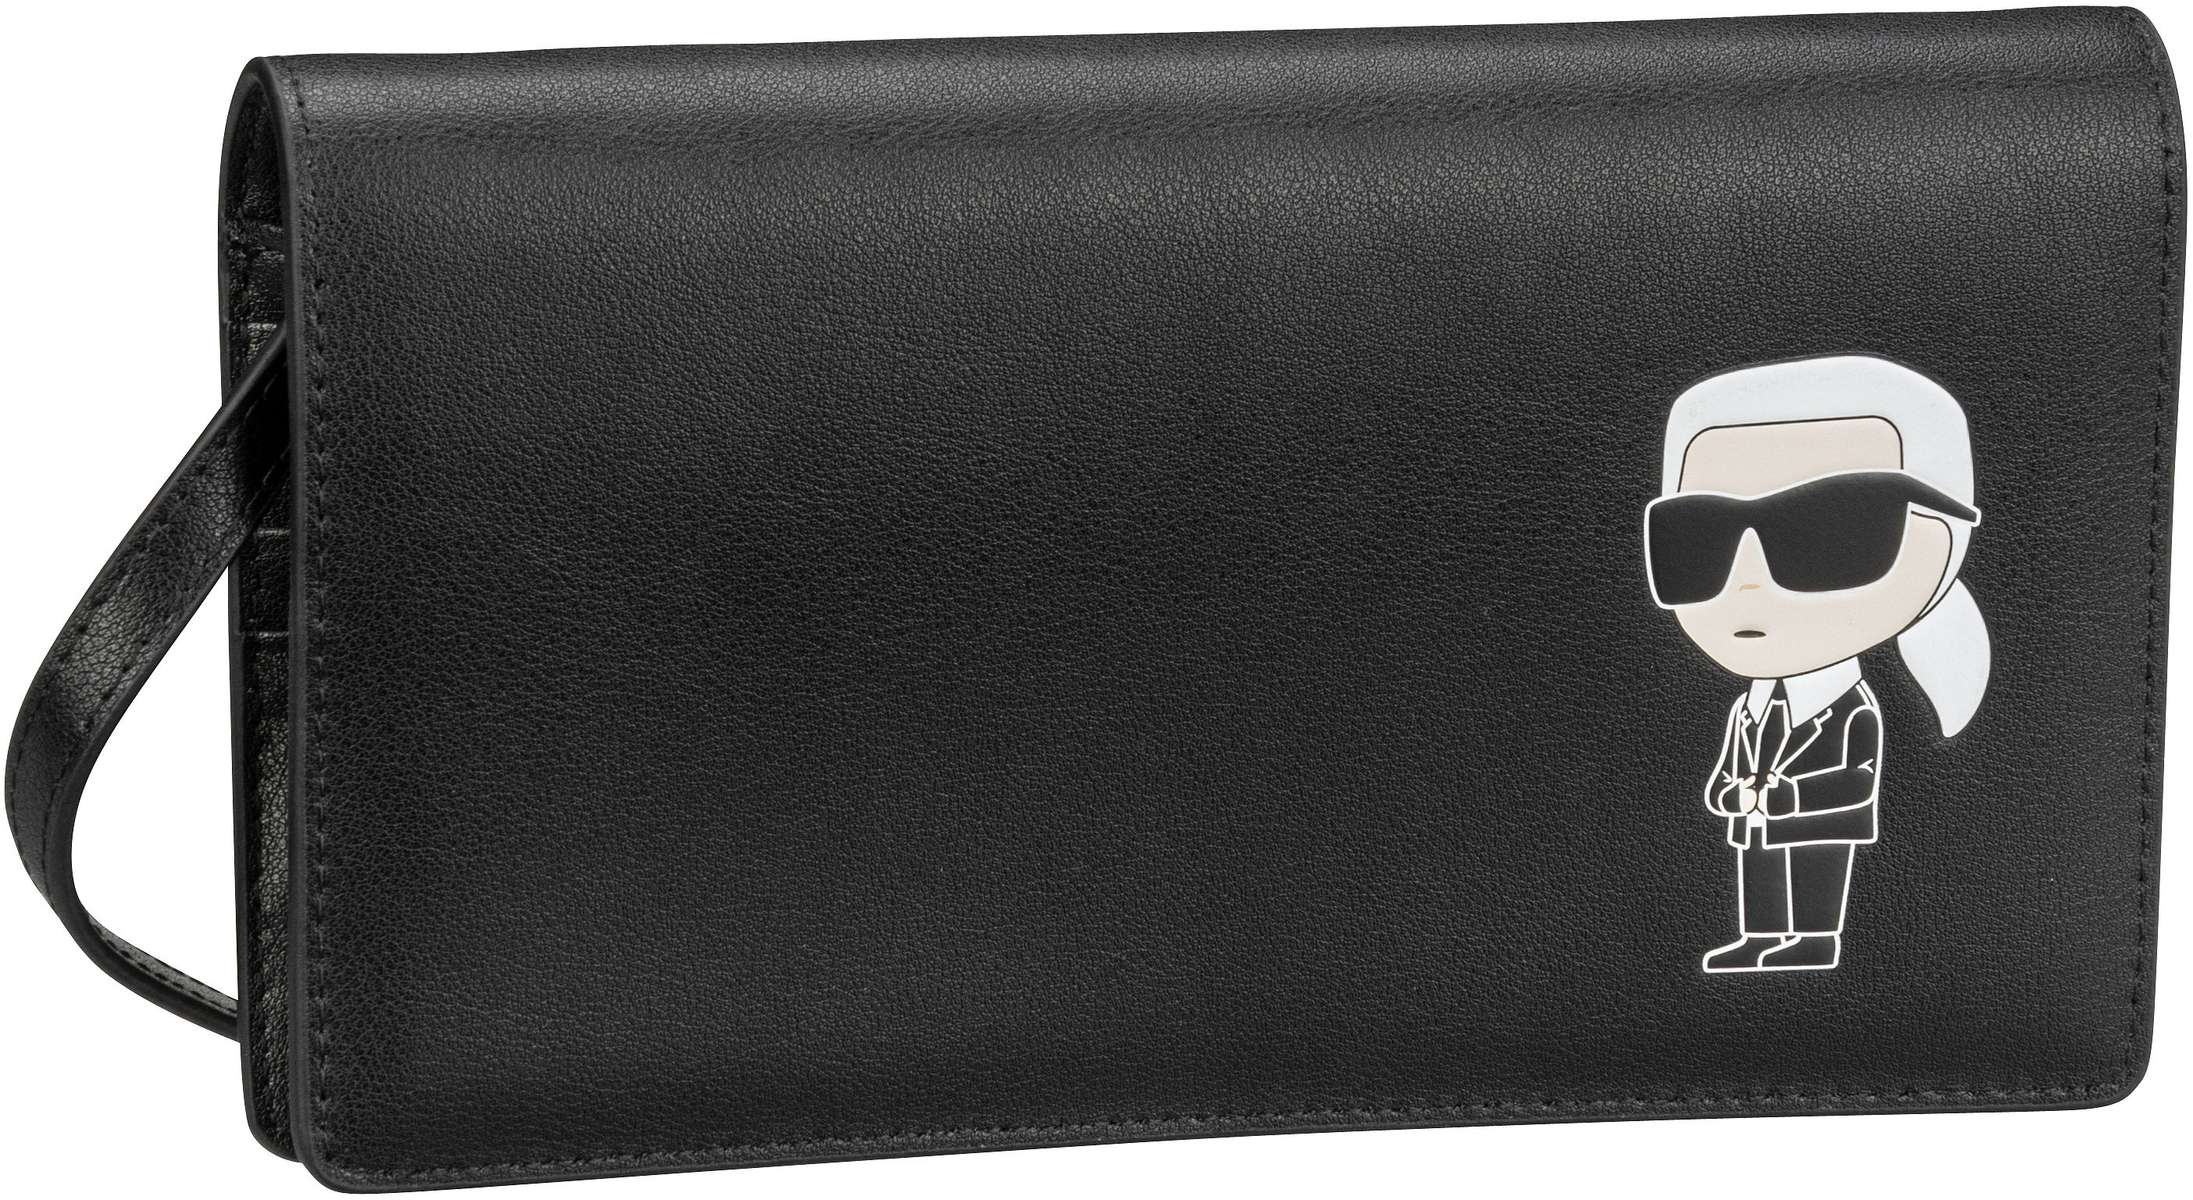 Karl Lagerfeld Abendtasche Clutch K Ikonik 2.0 Leather Flap Woc Black (0.6 Liter)  - Onlineshop Taschenkaufhaus